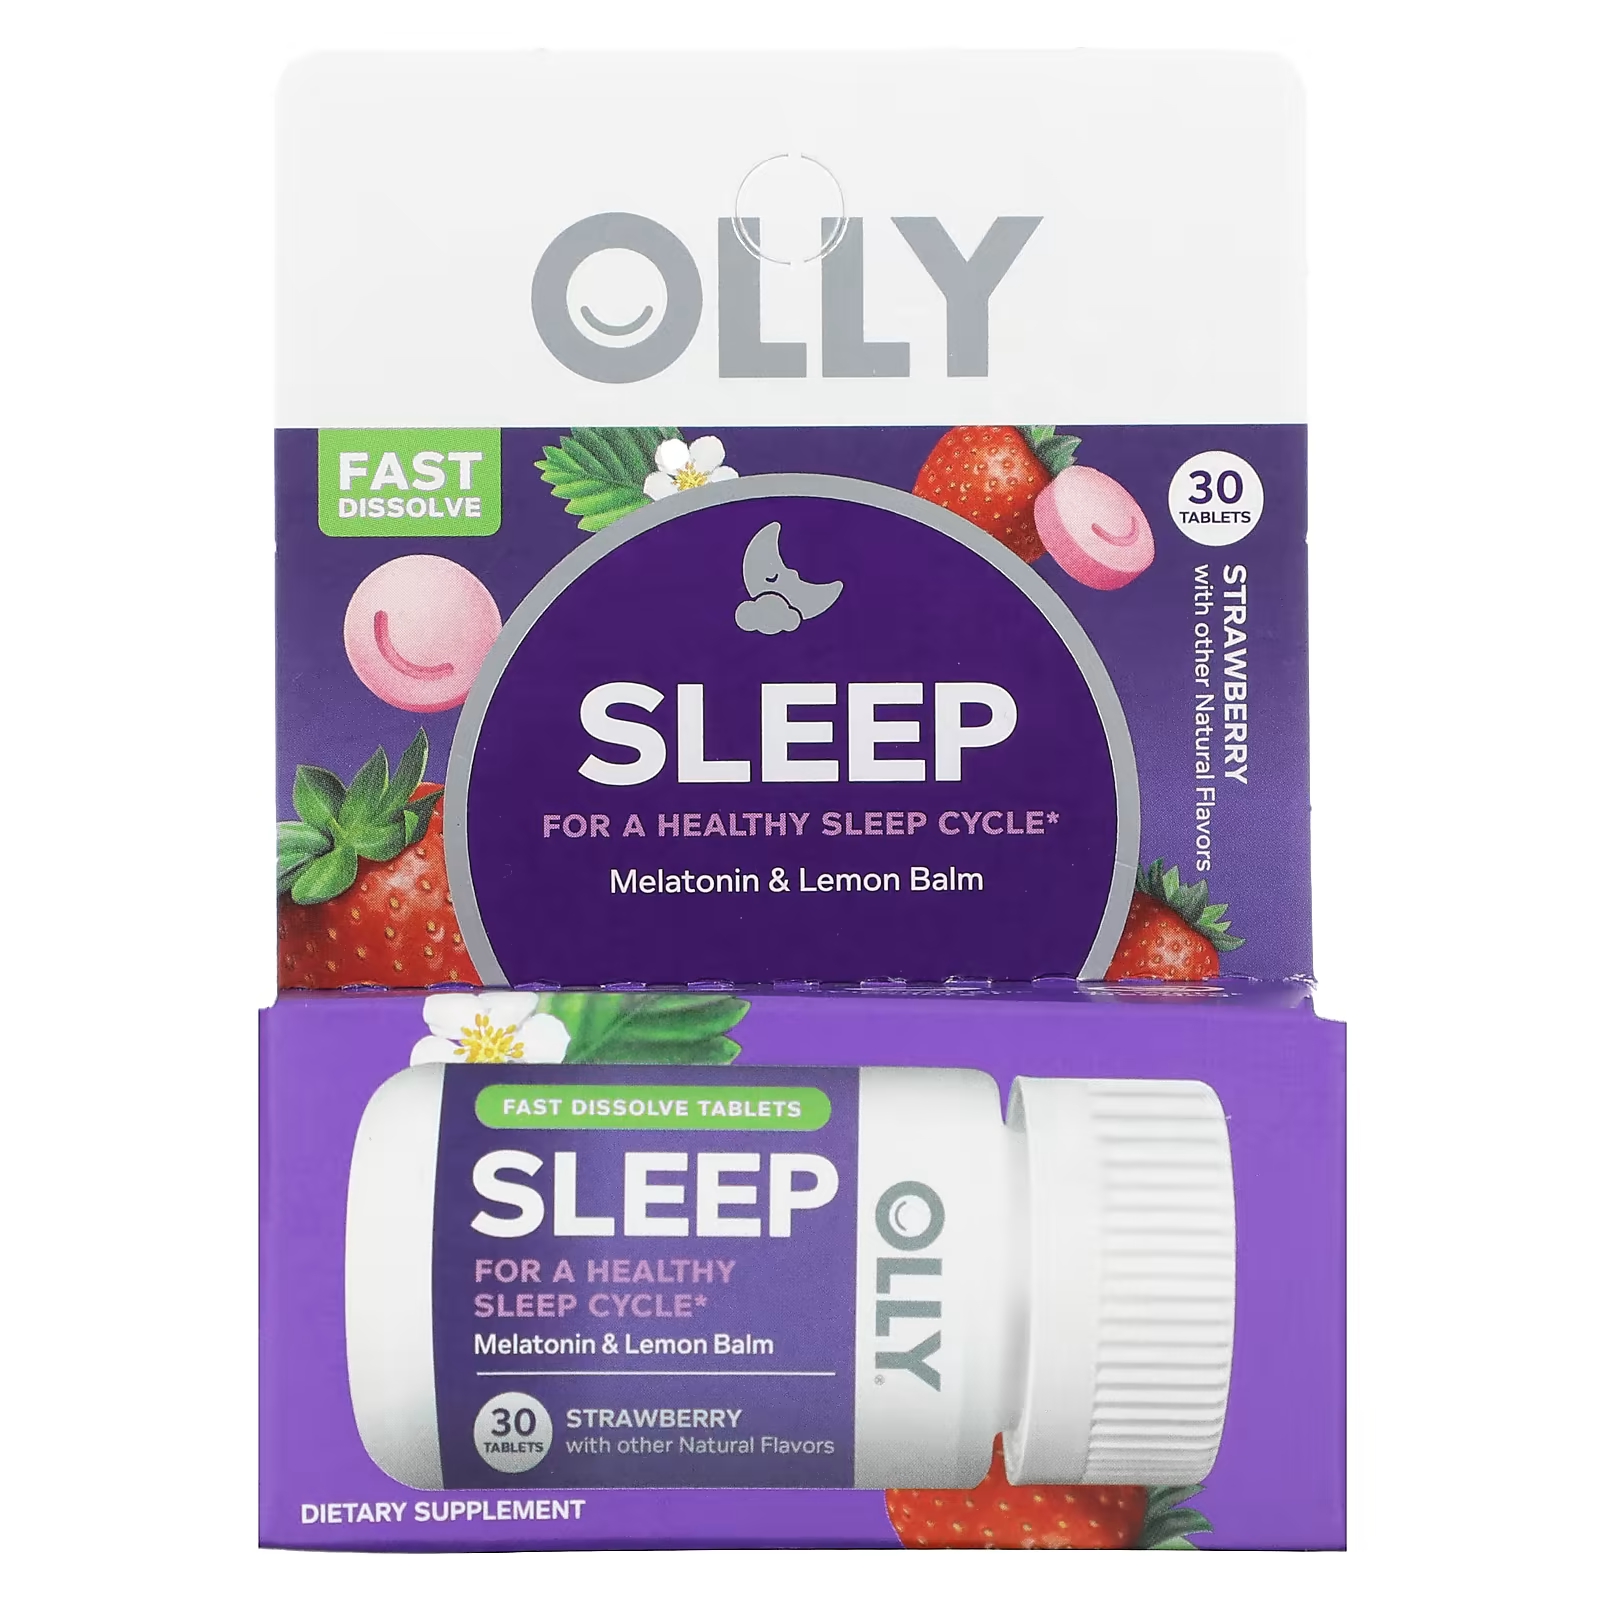 Пищевая добавка Olly Sleep клубника, 30 таблеток пищевая добавка olly sleep extra strength клубника 30 таблеток